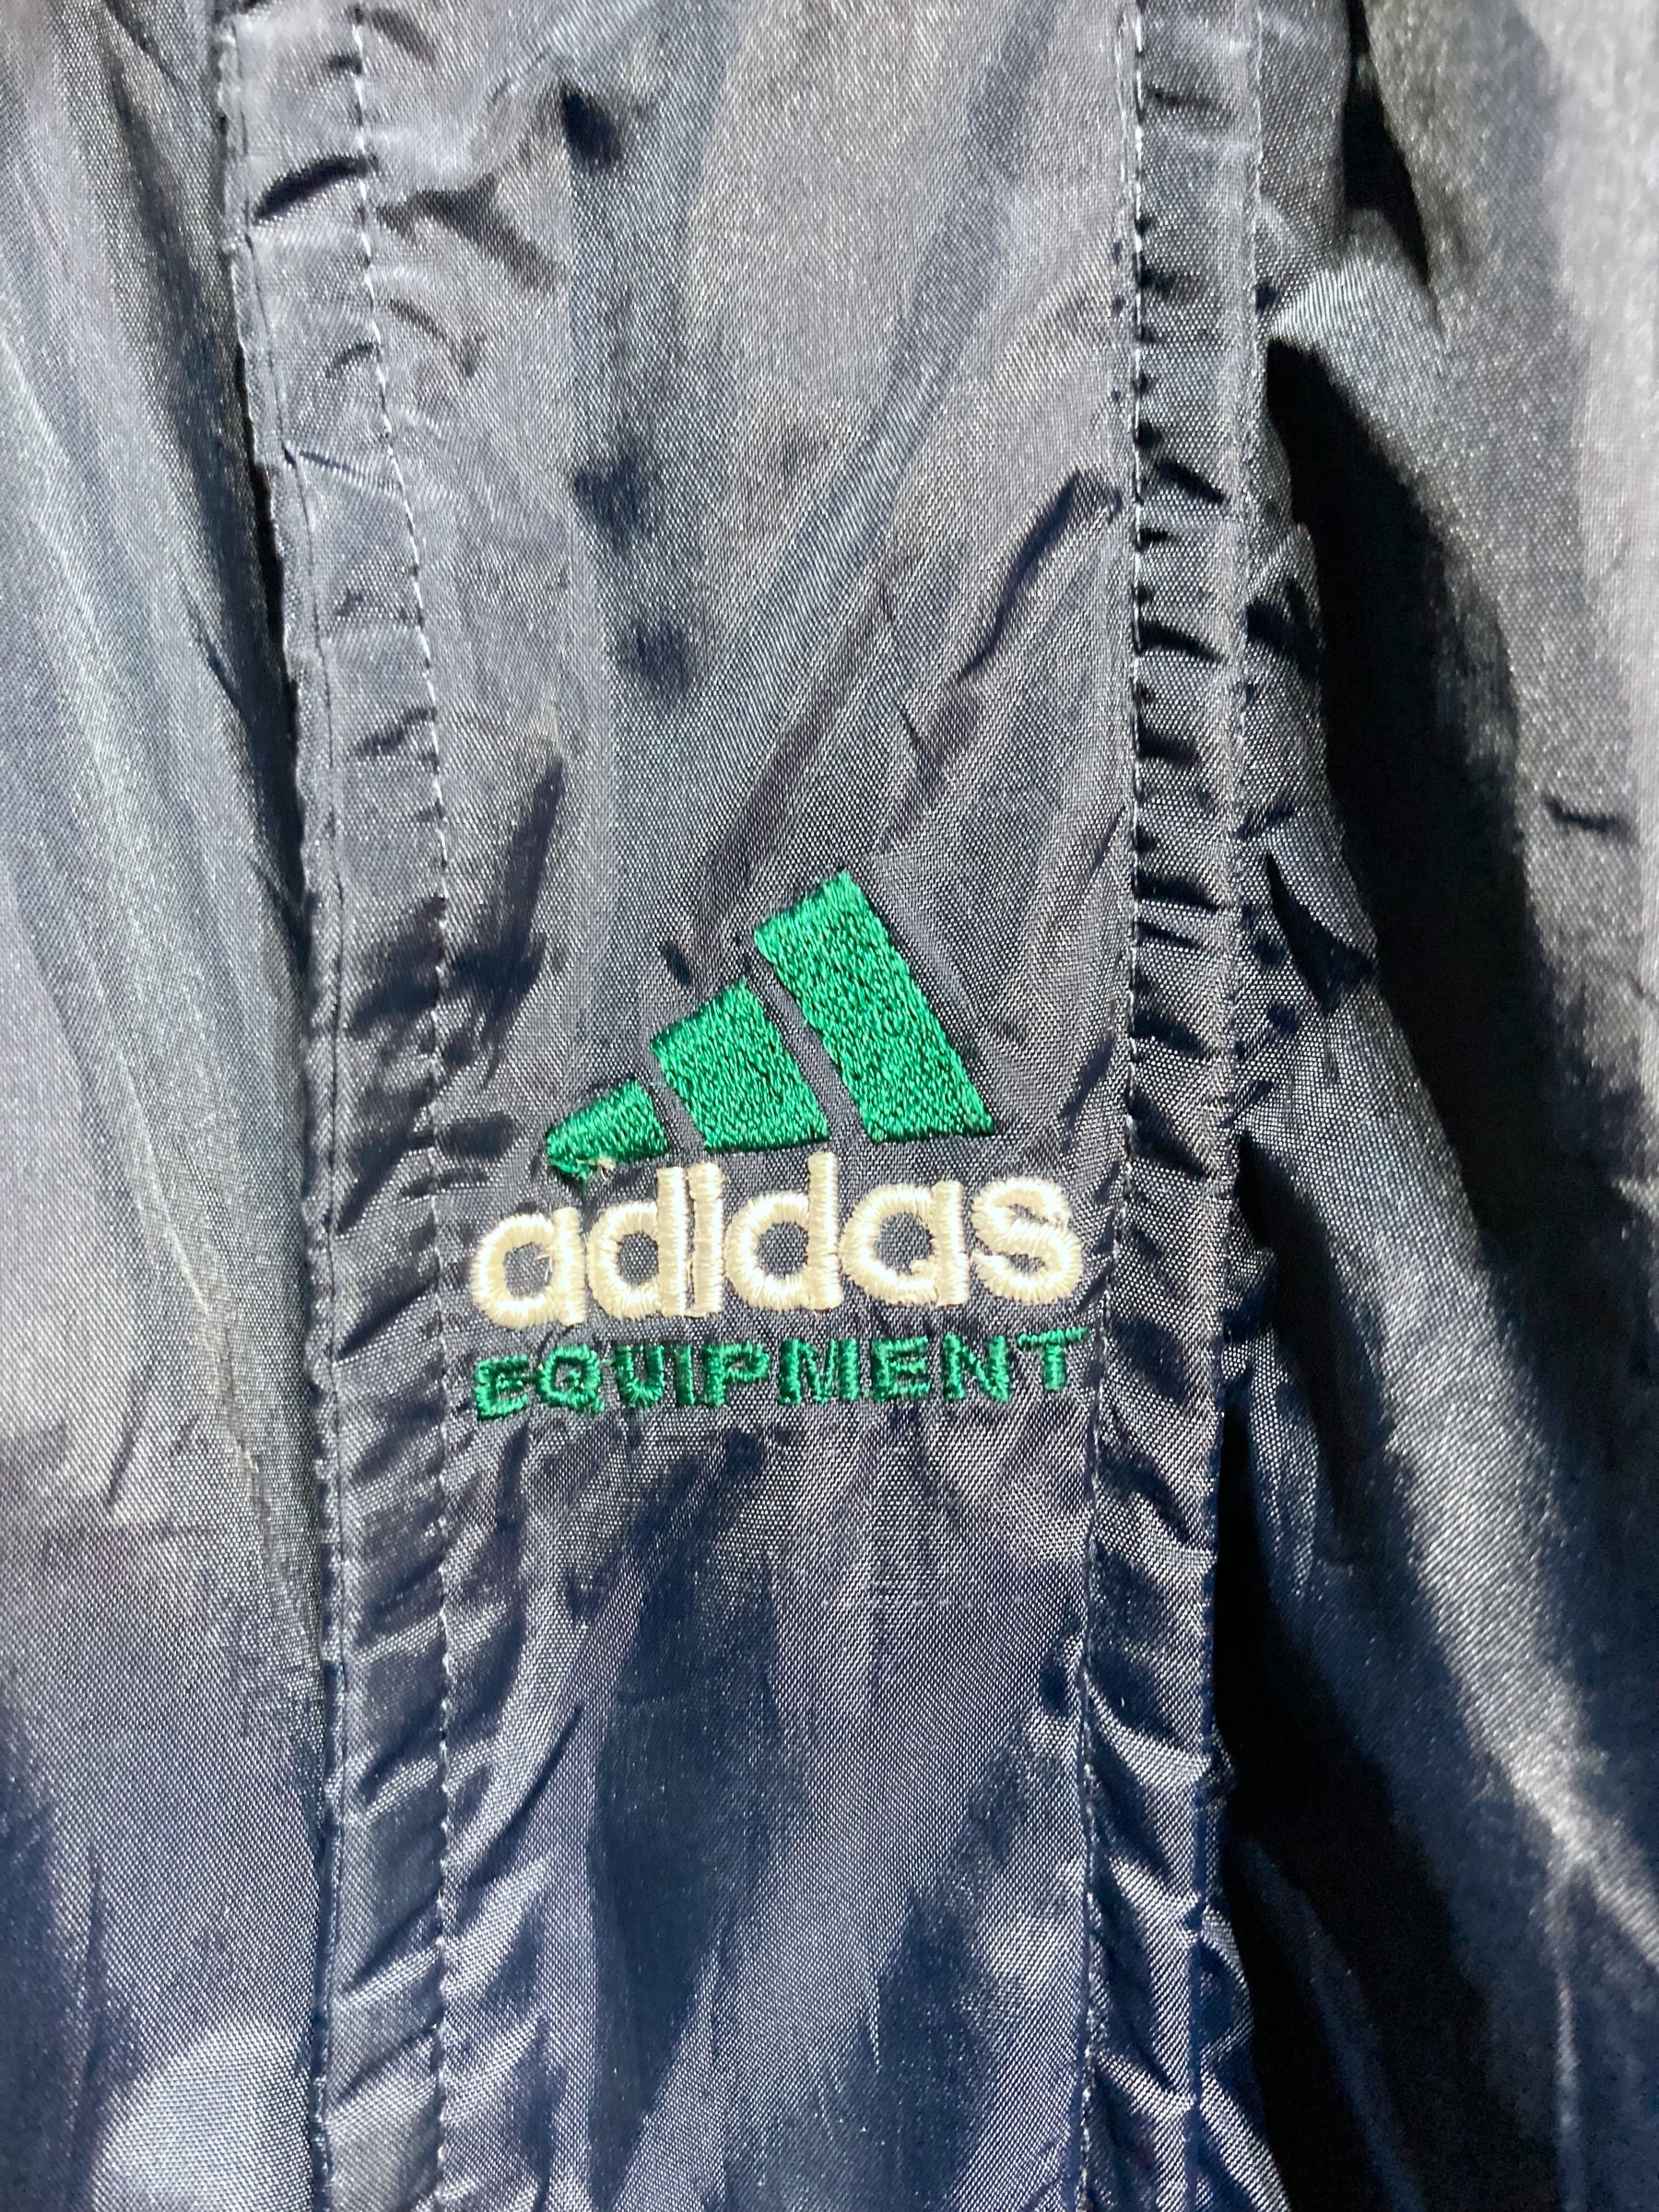 90年代 adidas アディダス ヴィンテージ 中綿 ナイロンジャケット